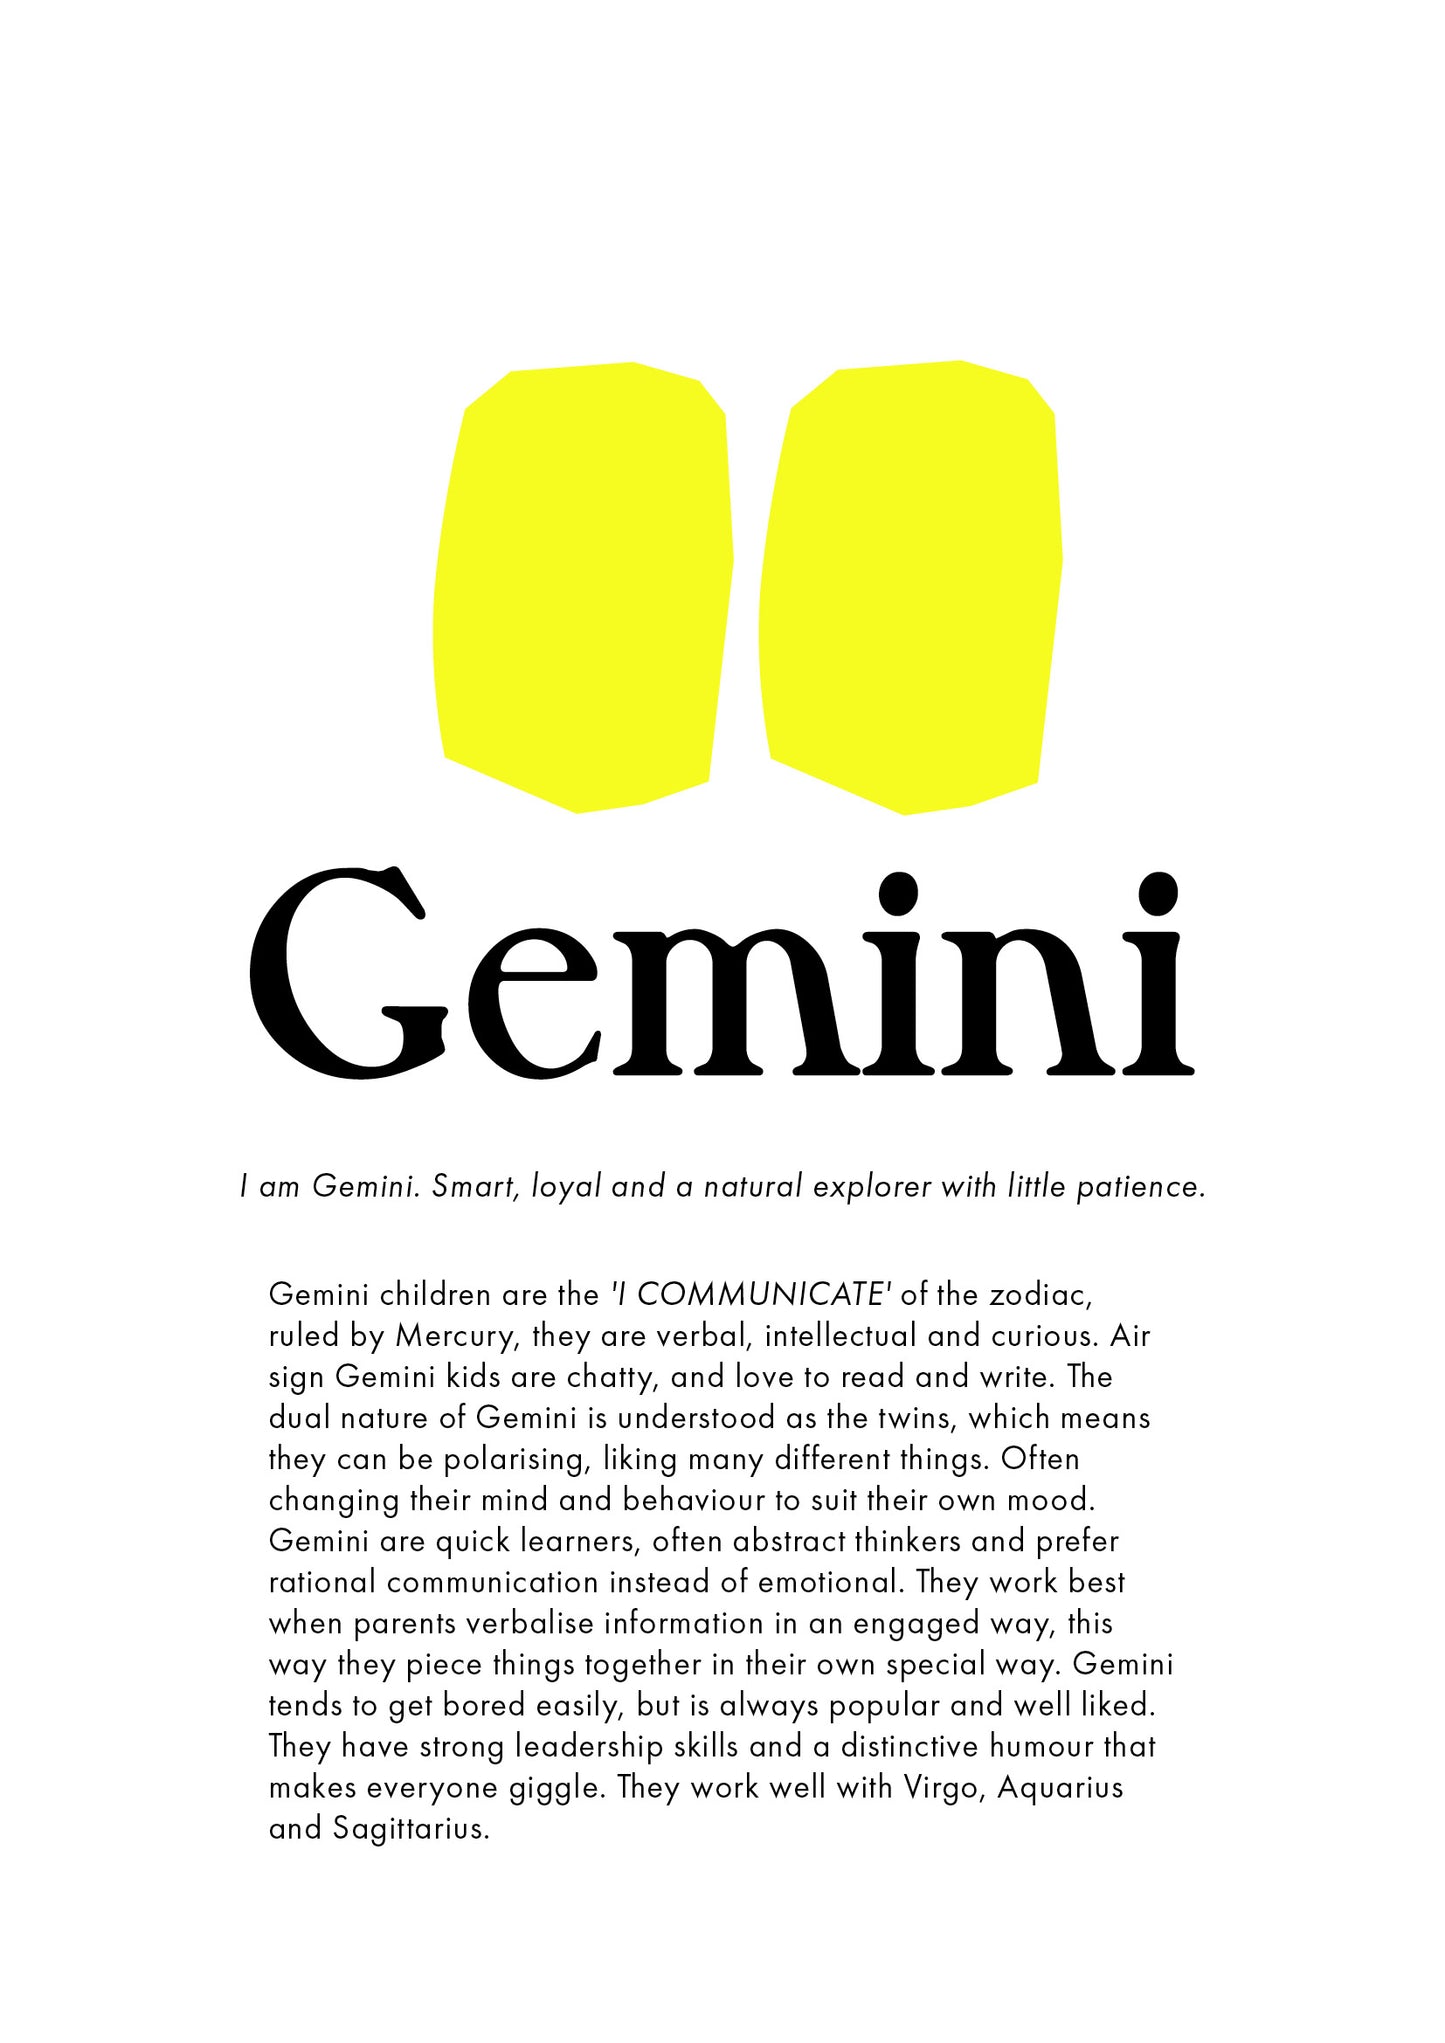 La Terre Press | Children's Zodiac Sign - Gemini